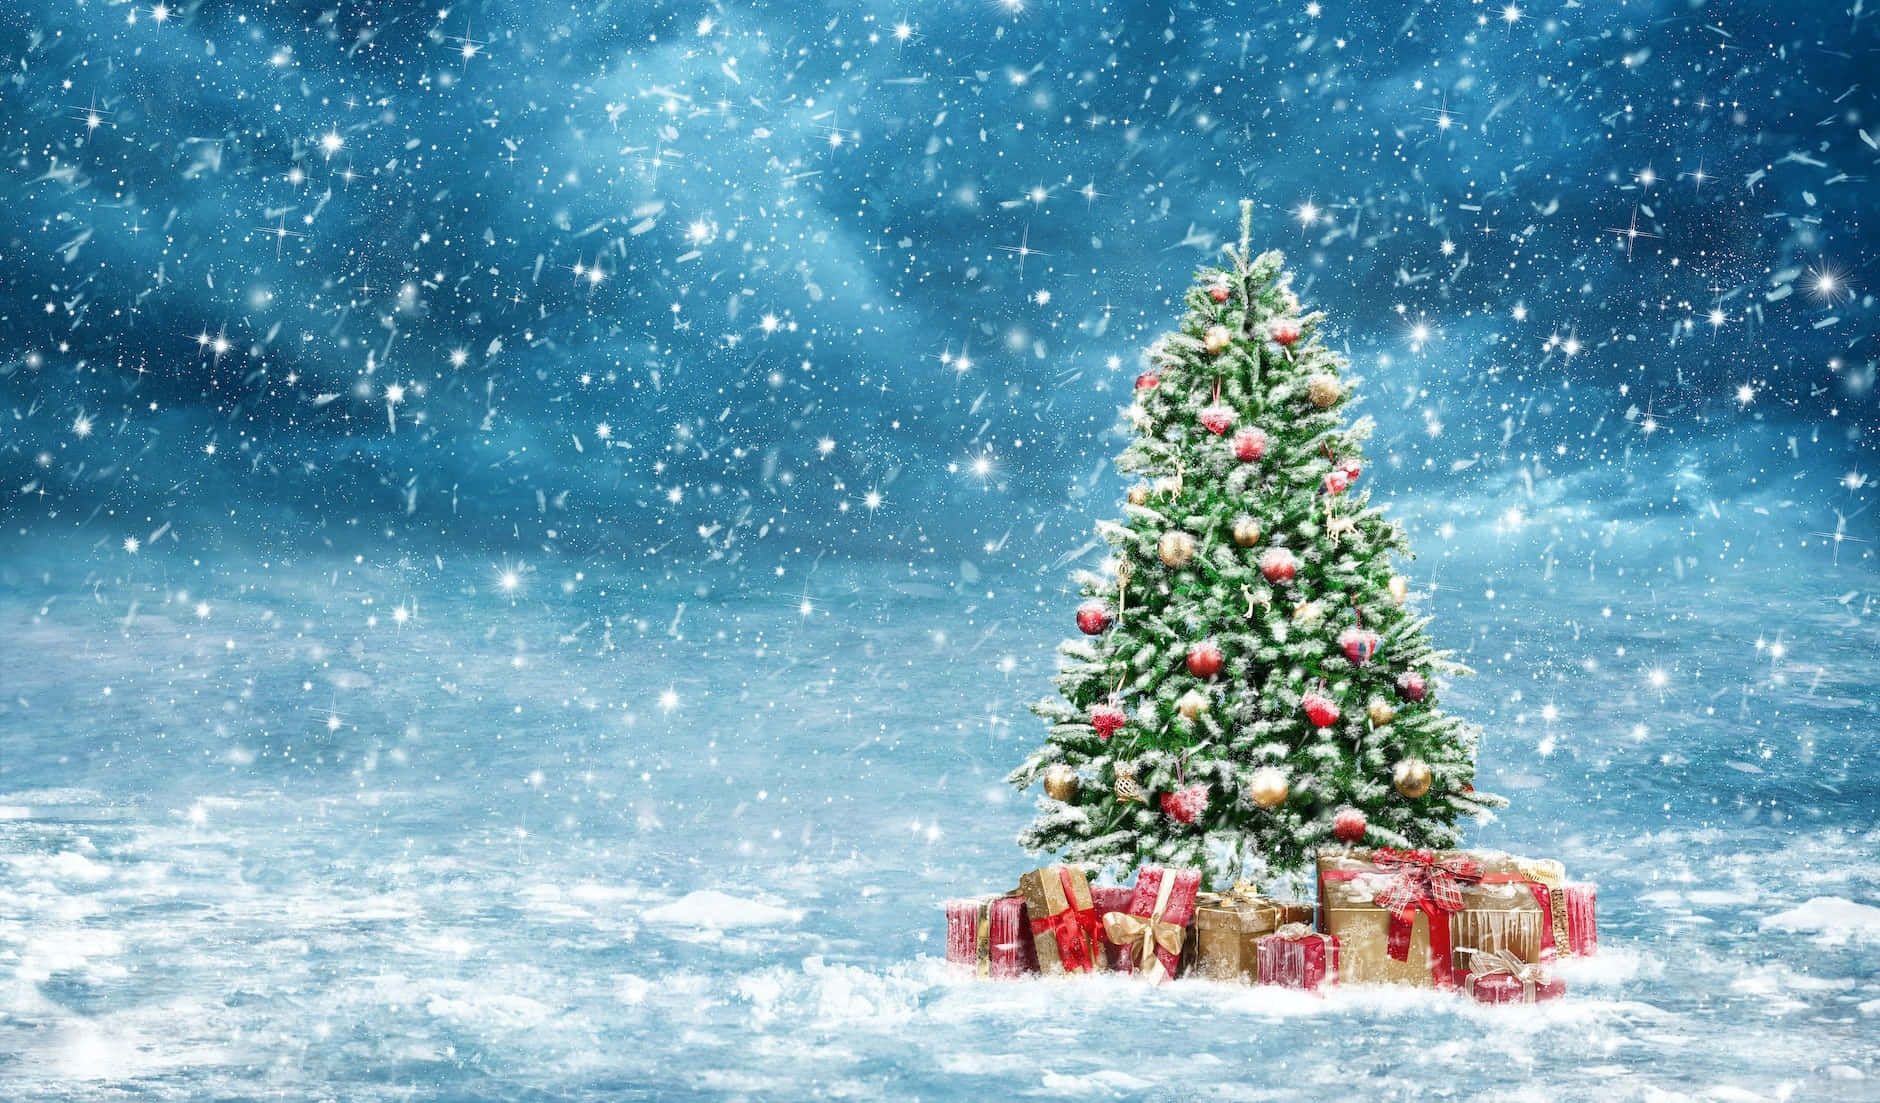 Imágenesde Árbol De Navidad Y Nieve